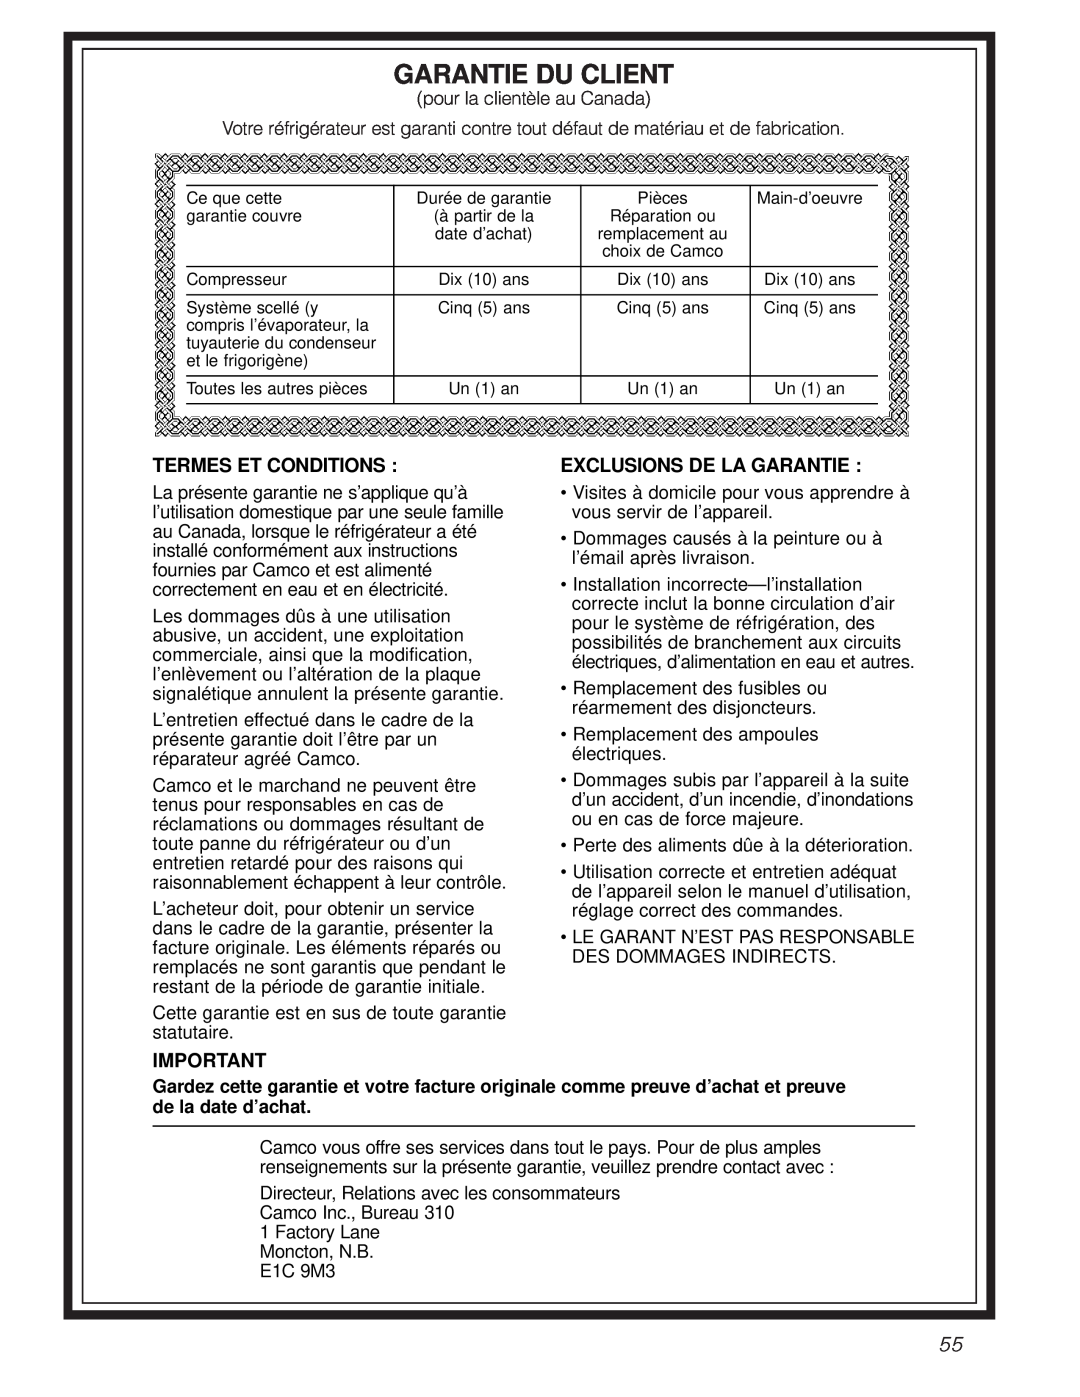 GE 22-27 owner manual Garantie Du Client, Termes Et Conditions, Exclusions De La Garantie 